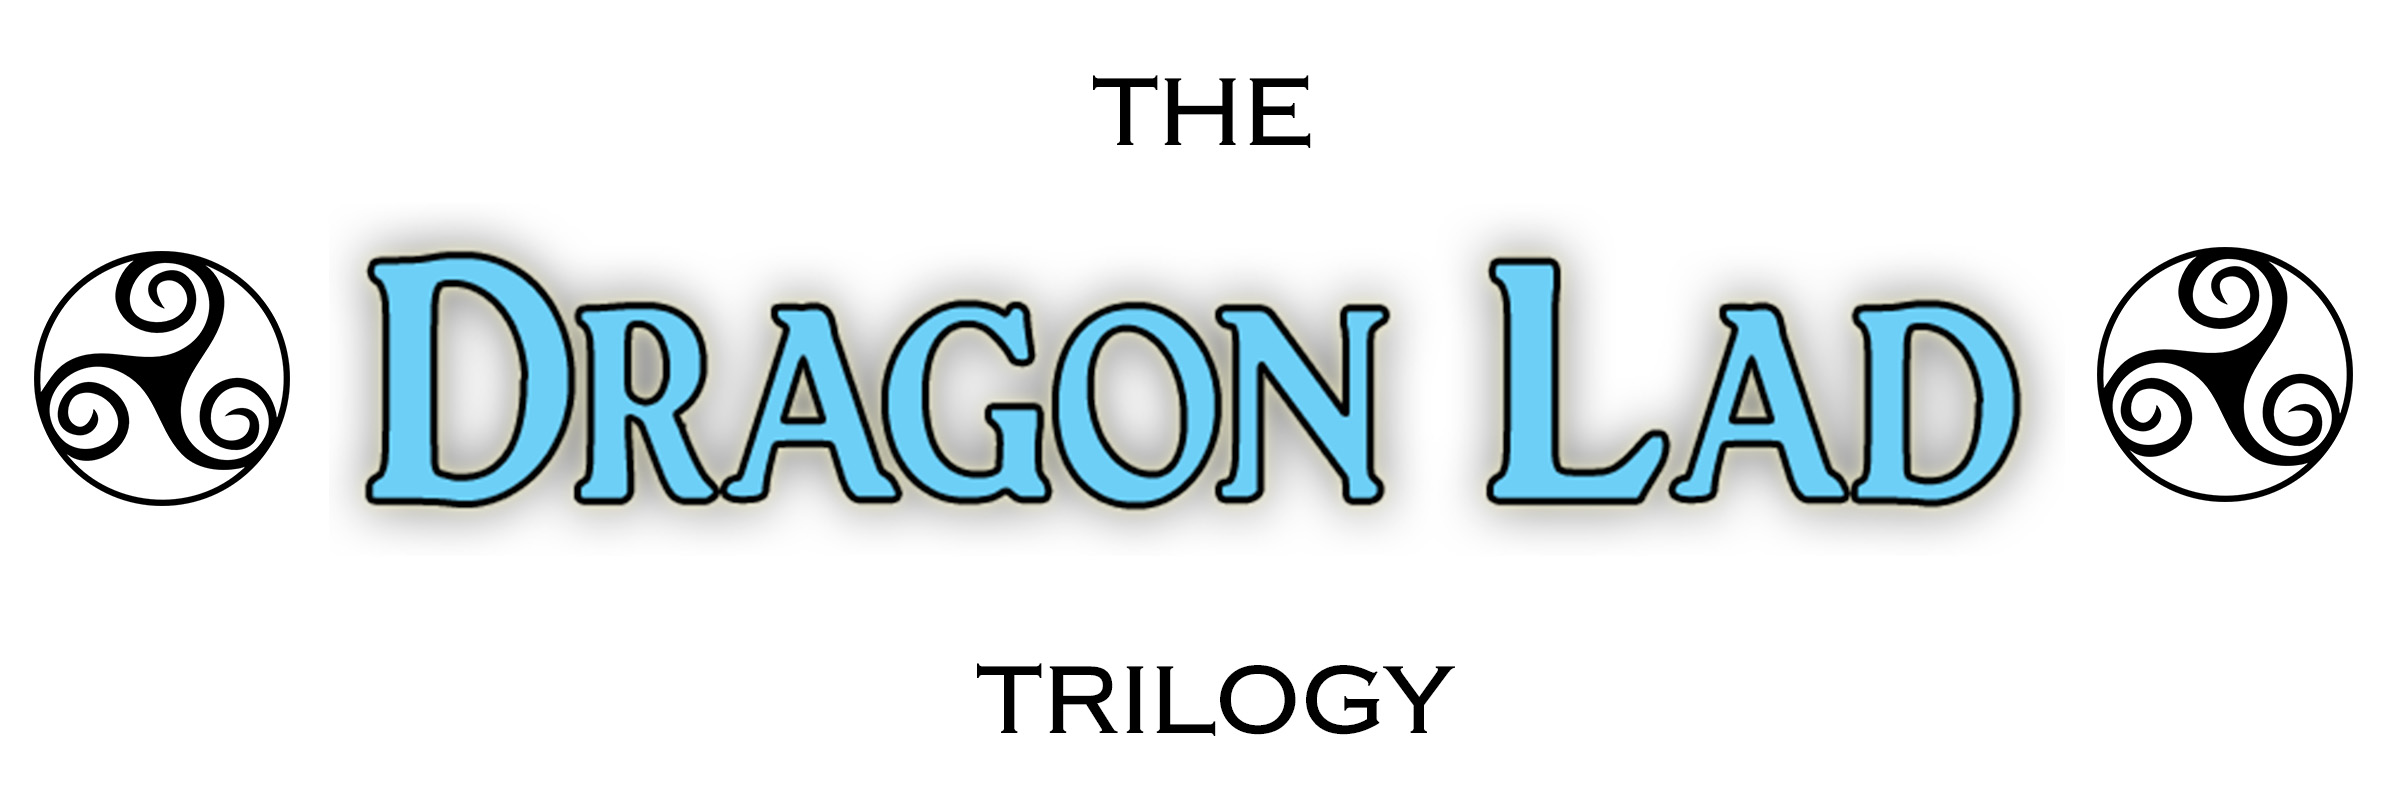 trilogy_title_web.jpg